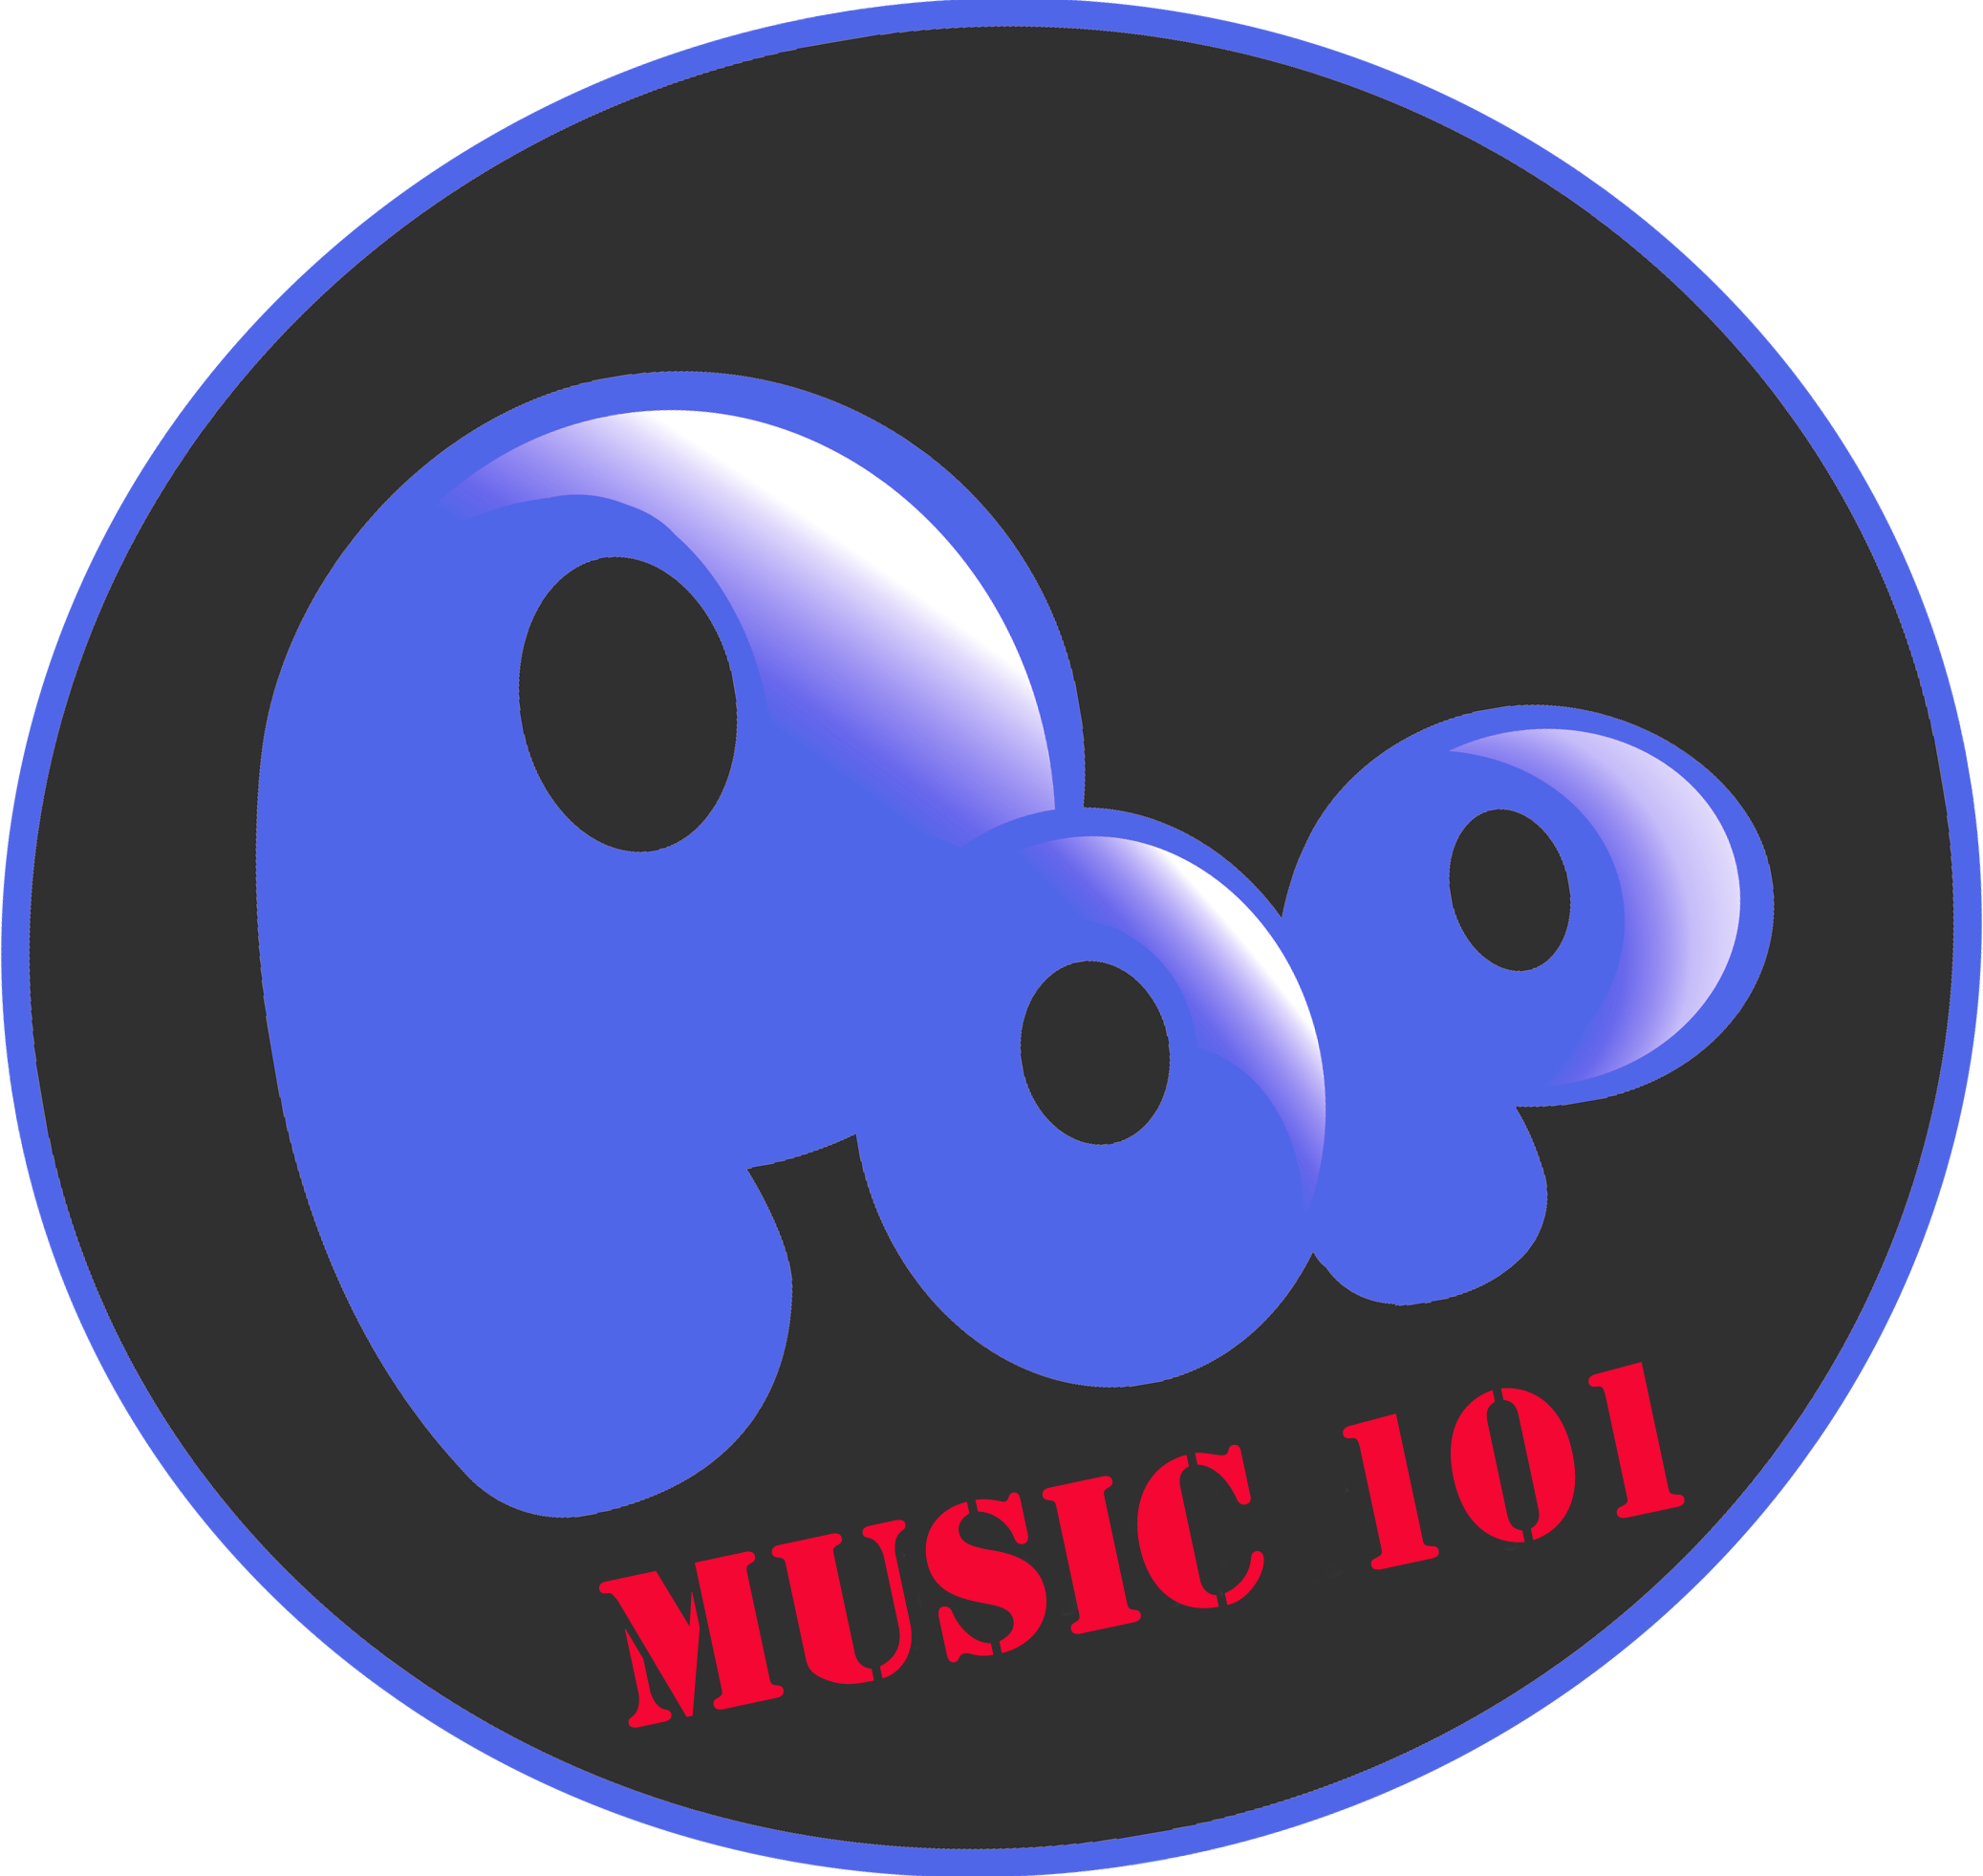 Pop Music 101 - Il Canale YouTube che Promuove Artisti Emergenti.